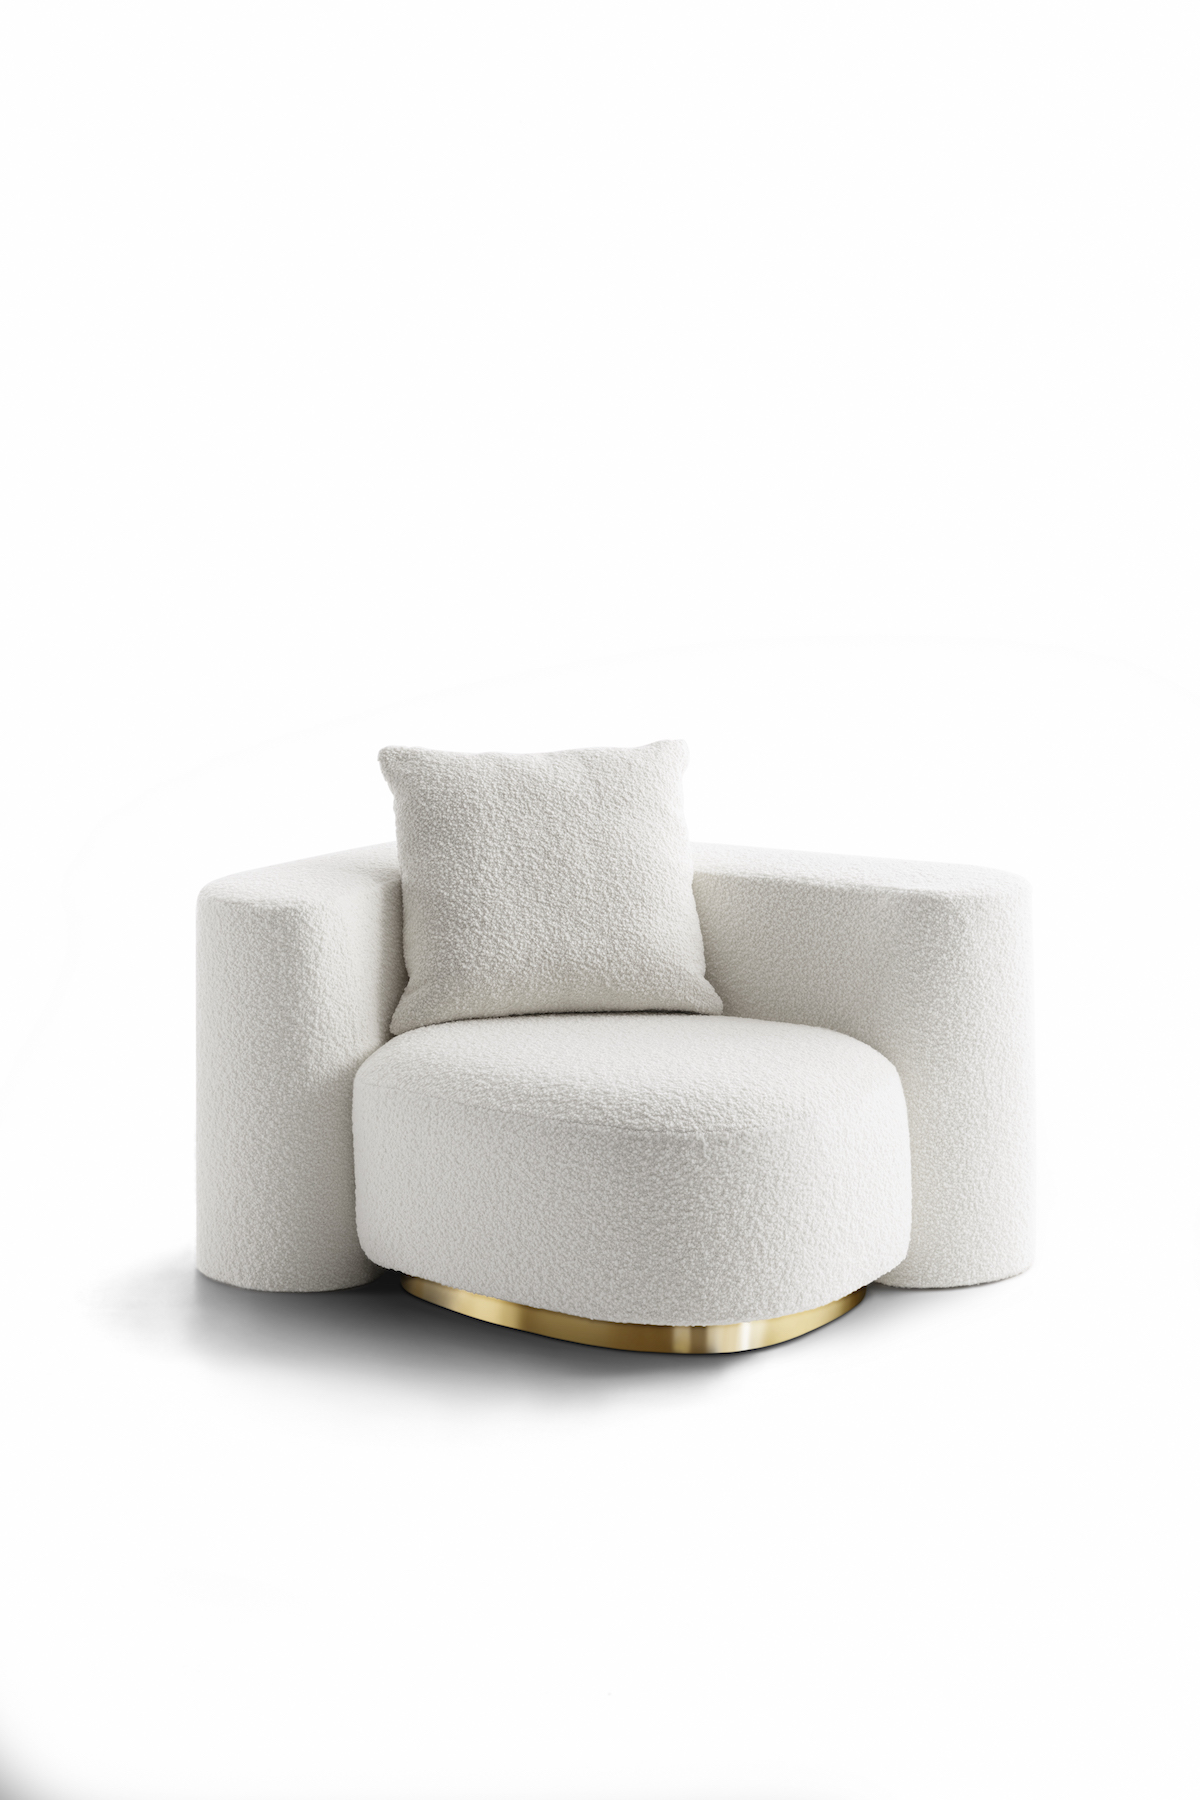 Dolce & Gabbana armchair